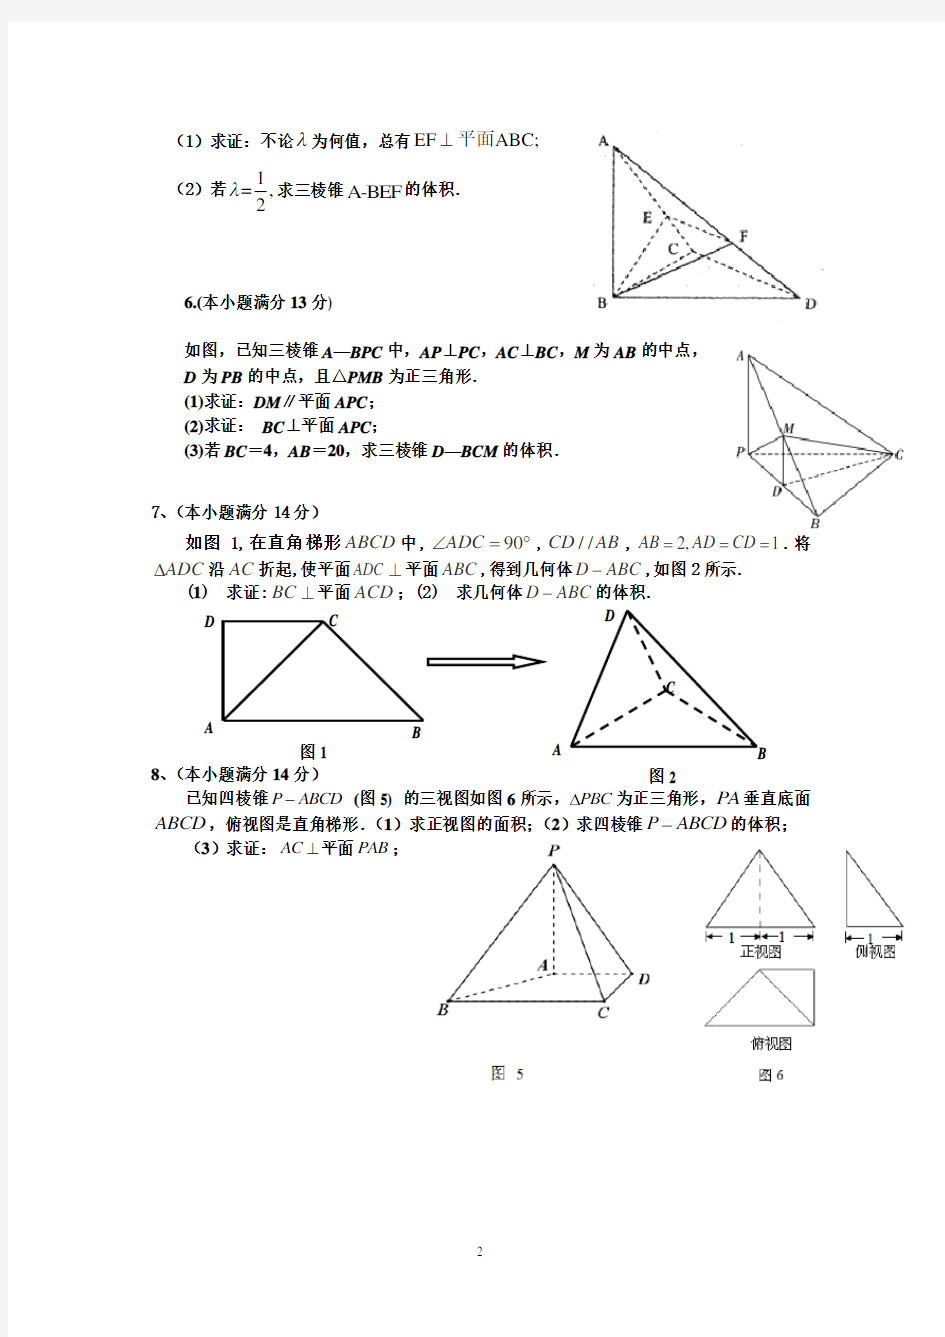 (完整)高二文科数学《立体几何》经典练习题(含解析)